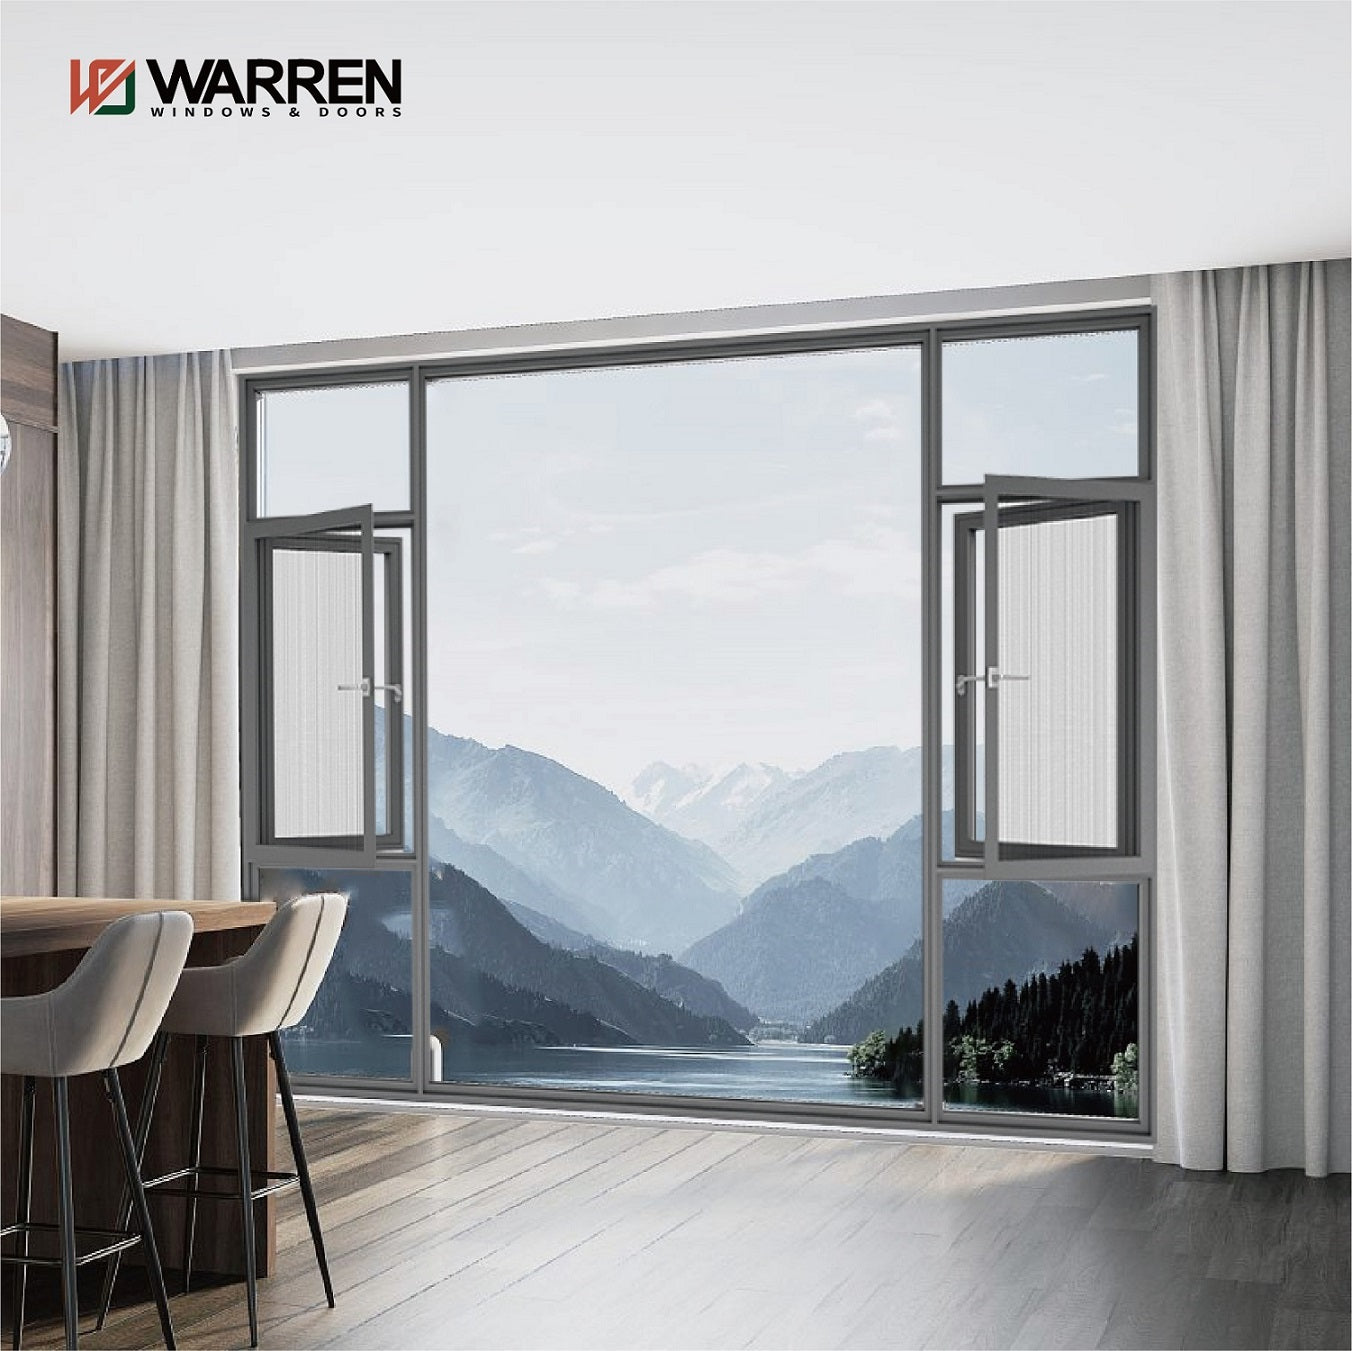 Warren Custom Made Casement Window Aluminium Frame Casement Window Home Casement Windows With Screen